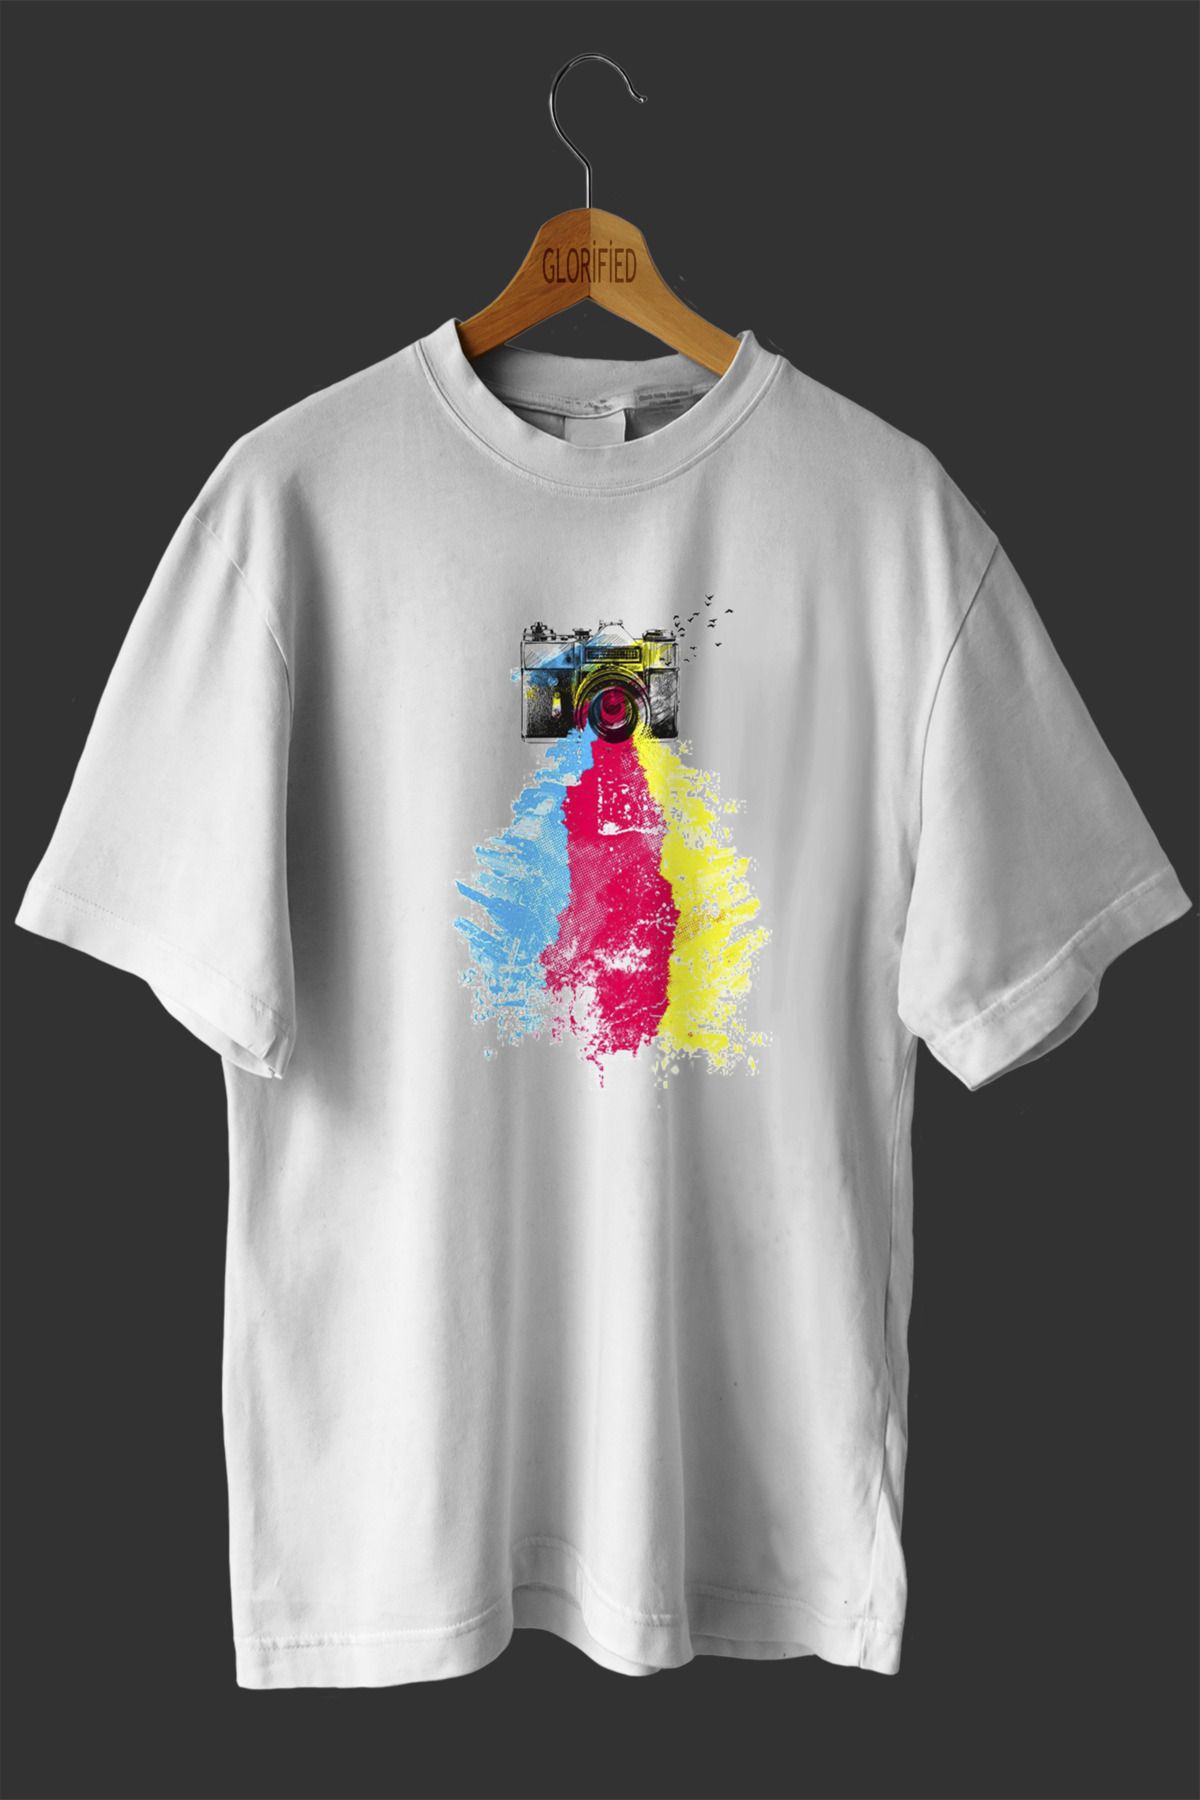 CB MAN COLLECTİON Fotoğraf Makinesi Tasarım Baskılı Oversize T-shirt ( Tişört ) %100 Cotton